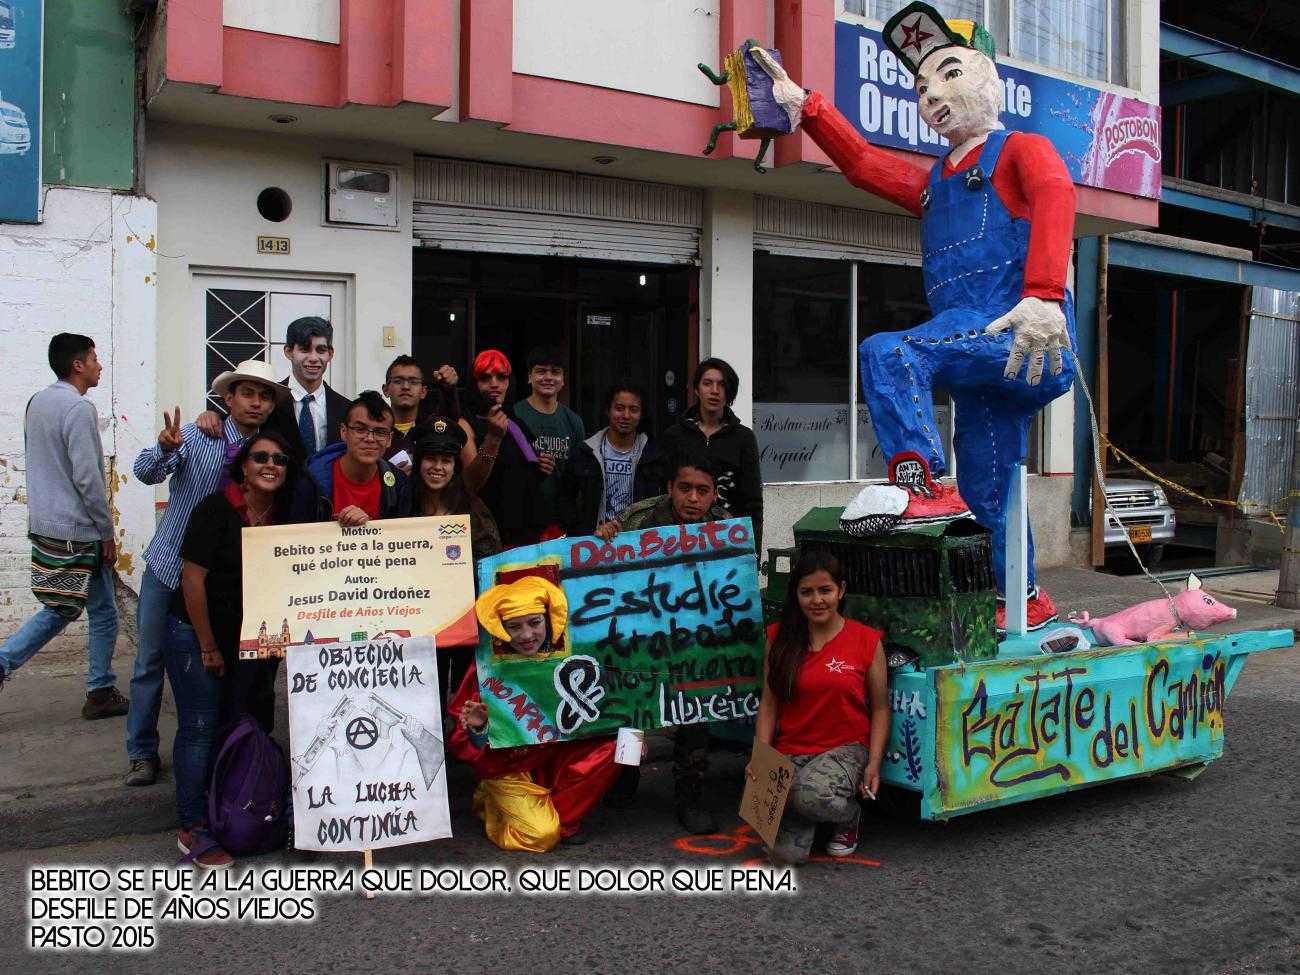 "Años Viejos" Parade 2015 / Pasto, Colombia